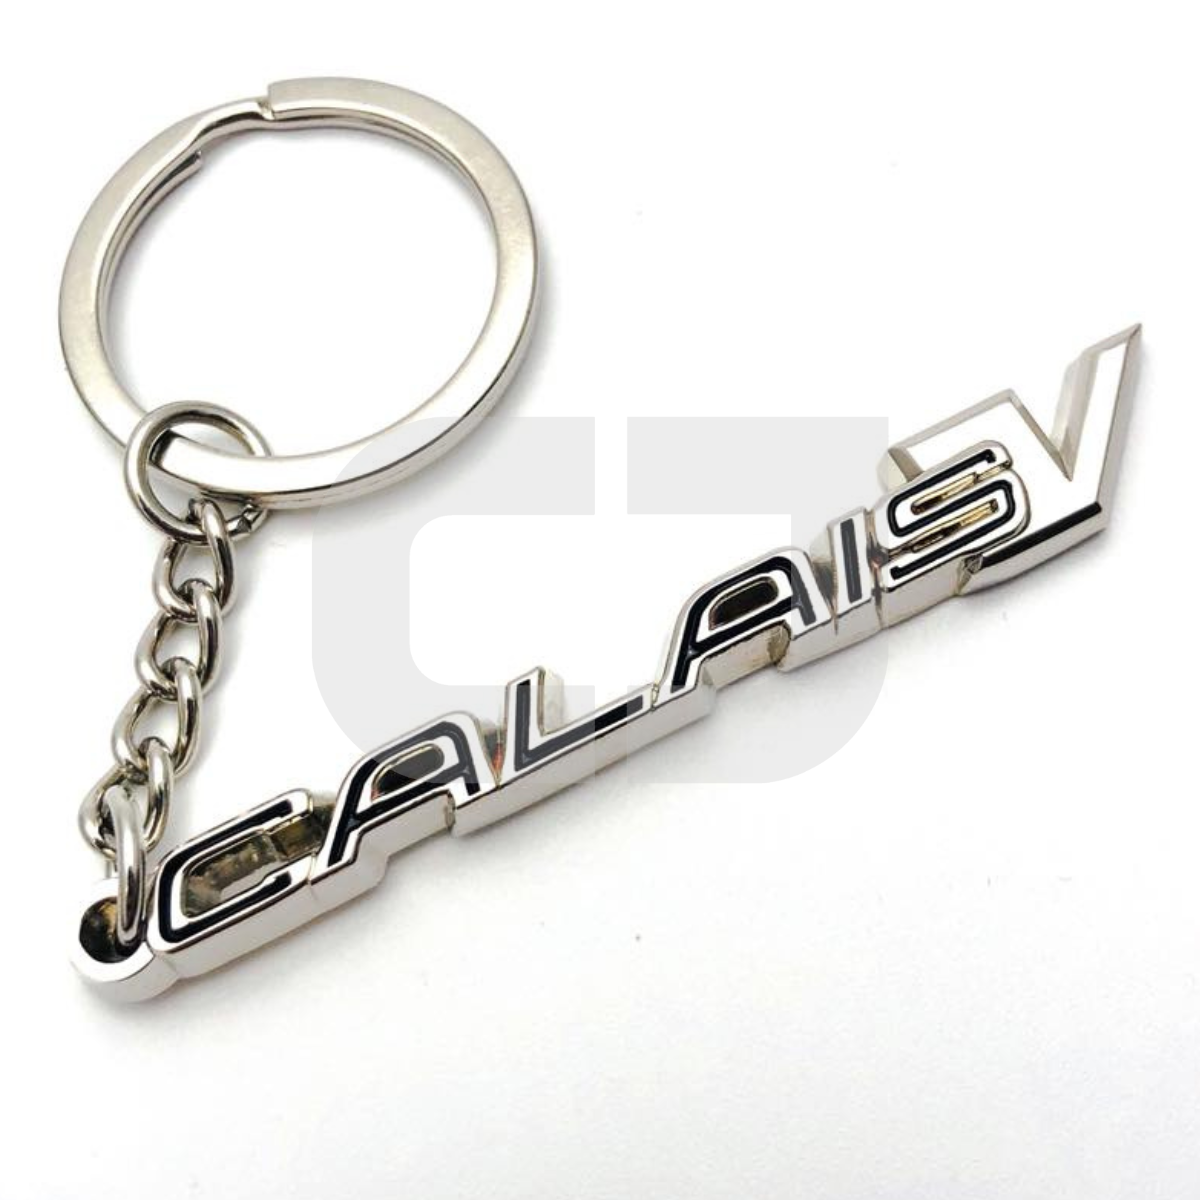 Holden CalaisV Keyring